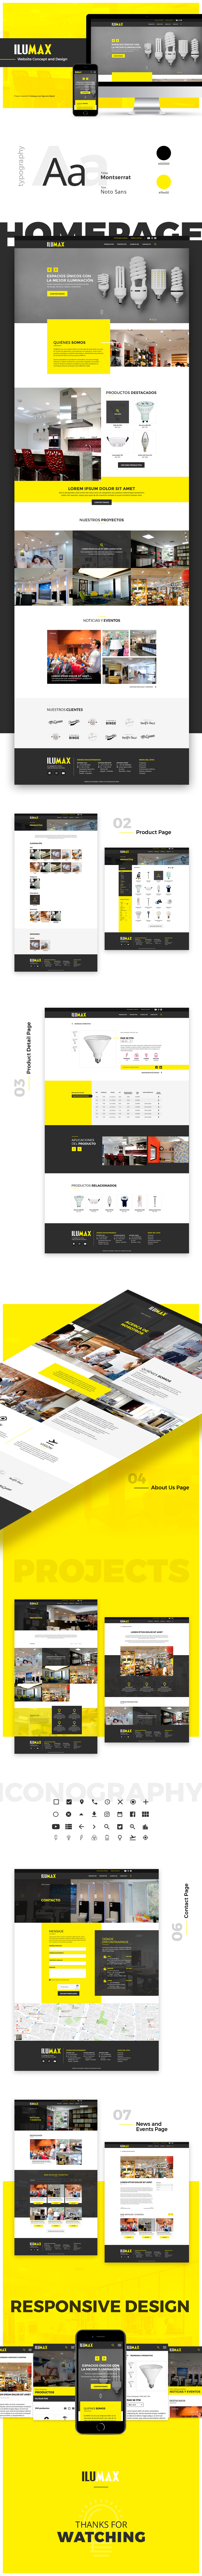 UI ux design UI/UX Design Website Interaction design  Lightbulb design thinking Responsive